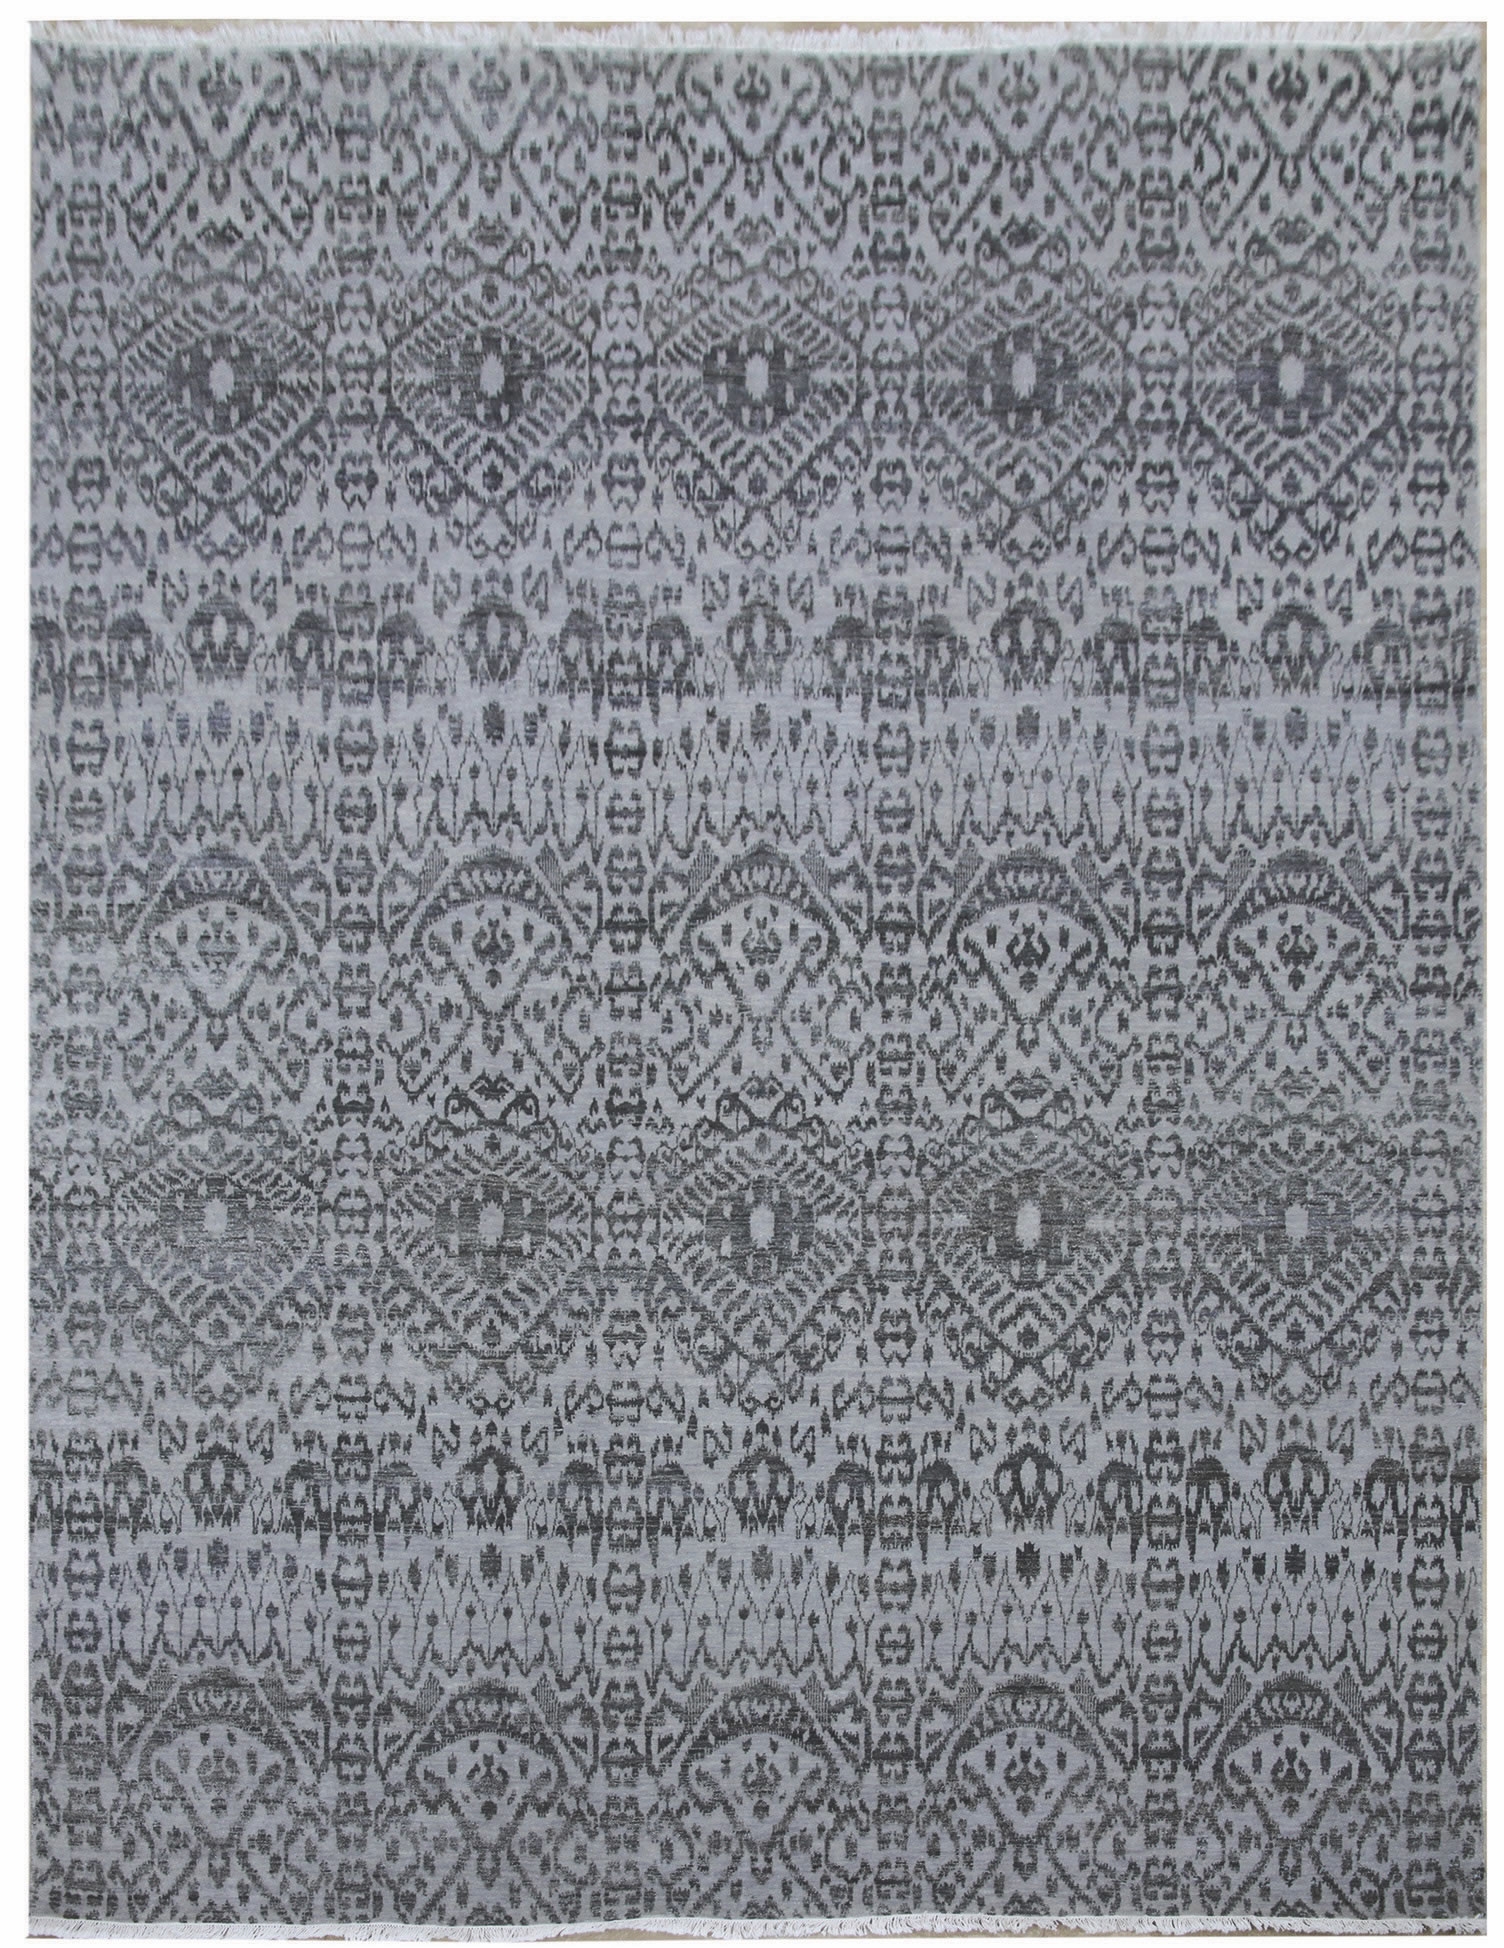 Ručne viazaný kusový koberec Diamond DC-EKT L silver / black - 245x305 cm Diamond Carpets koberce 